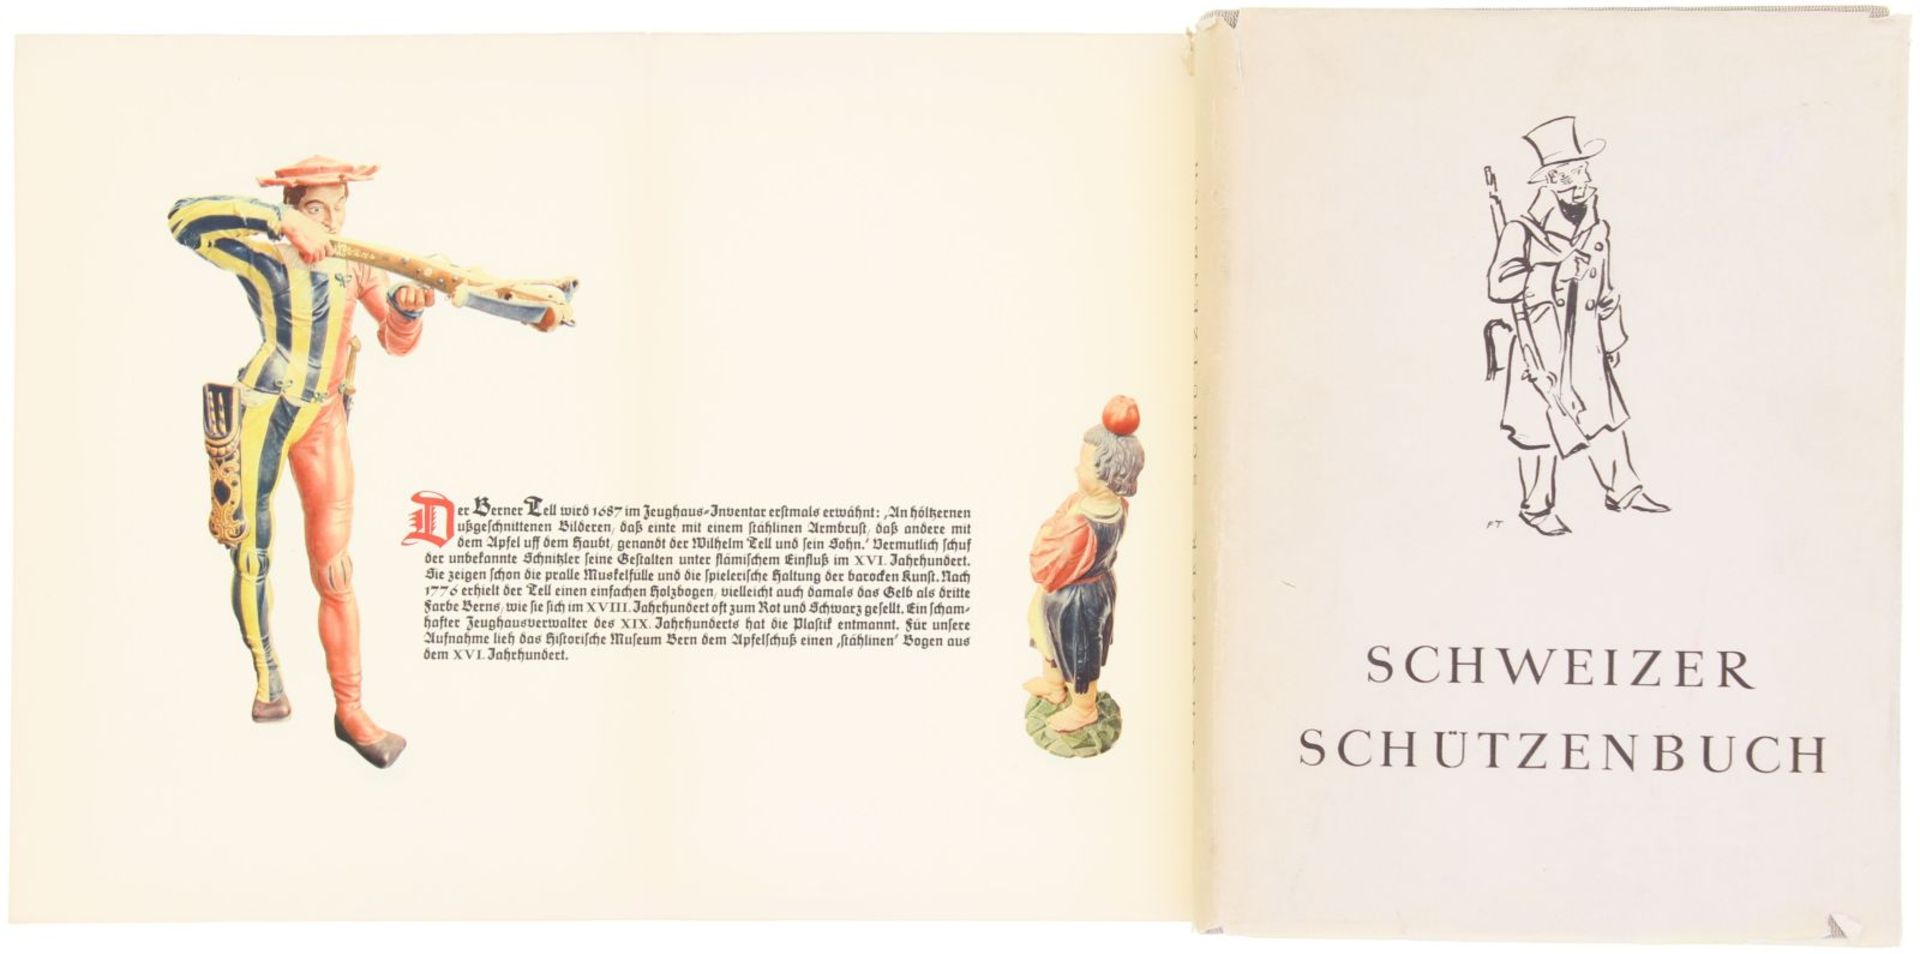 Schweizer Schützenbuch, Verkehrsverlag AG Zürich, 1943. Standardwerk über das schweizer Schiesswesen